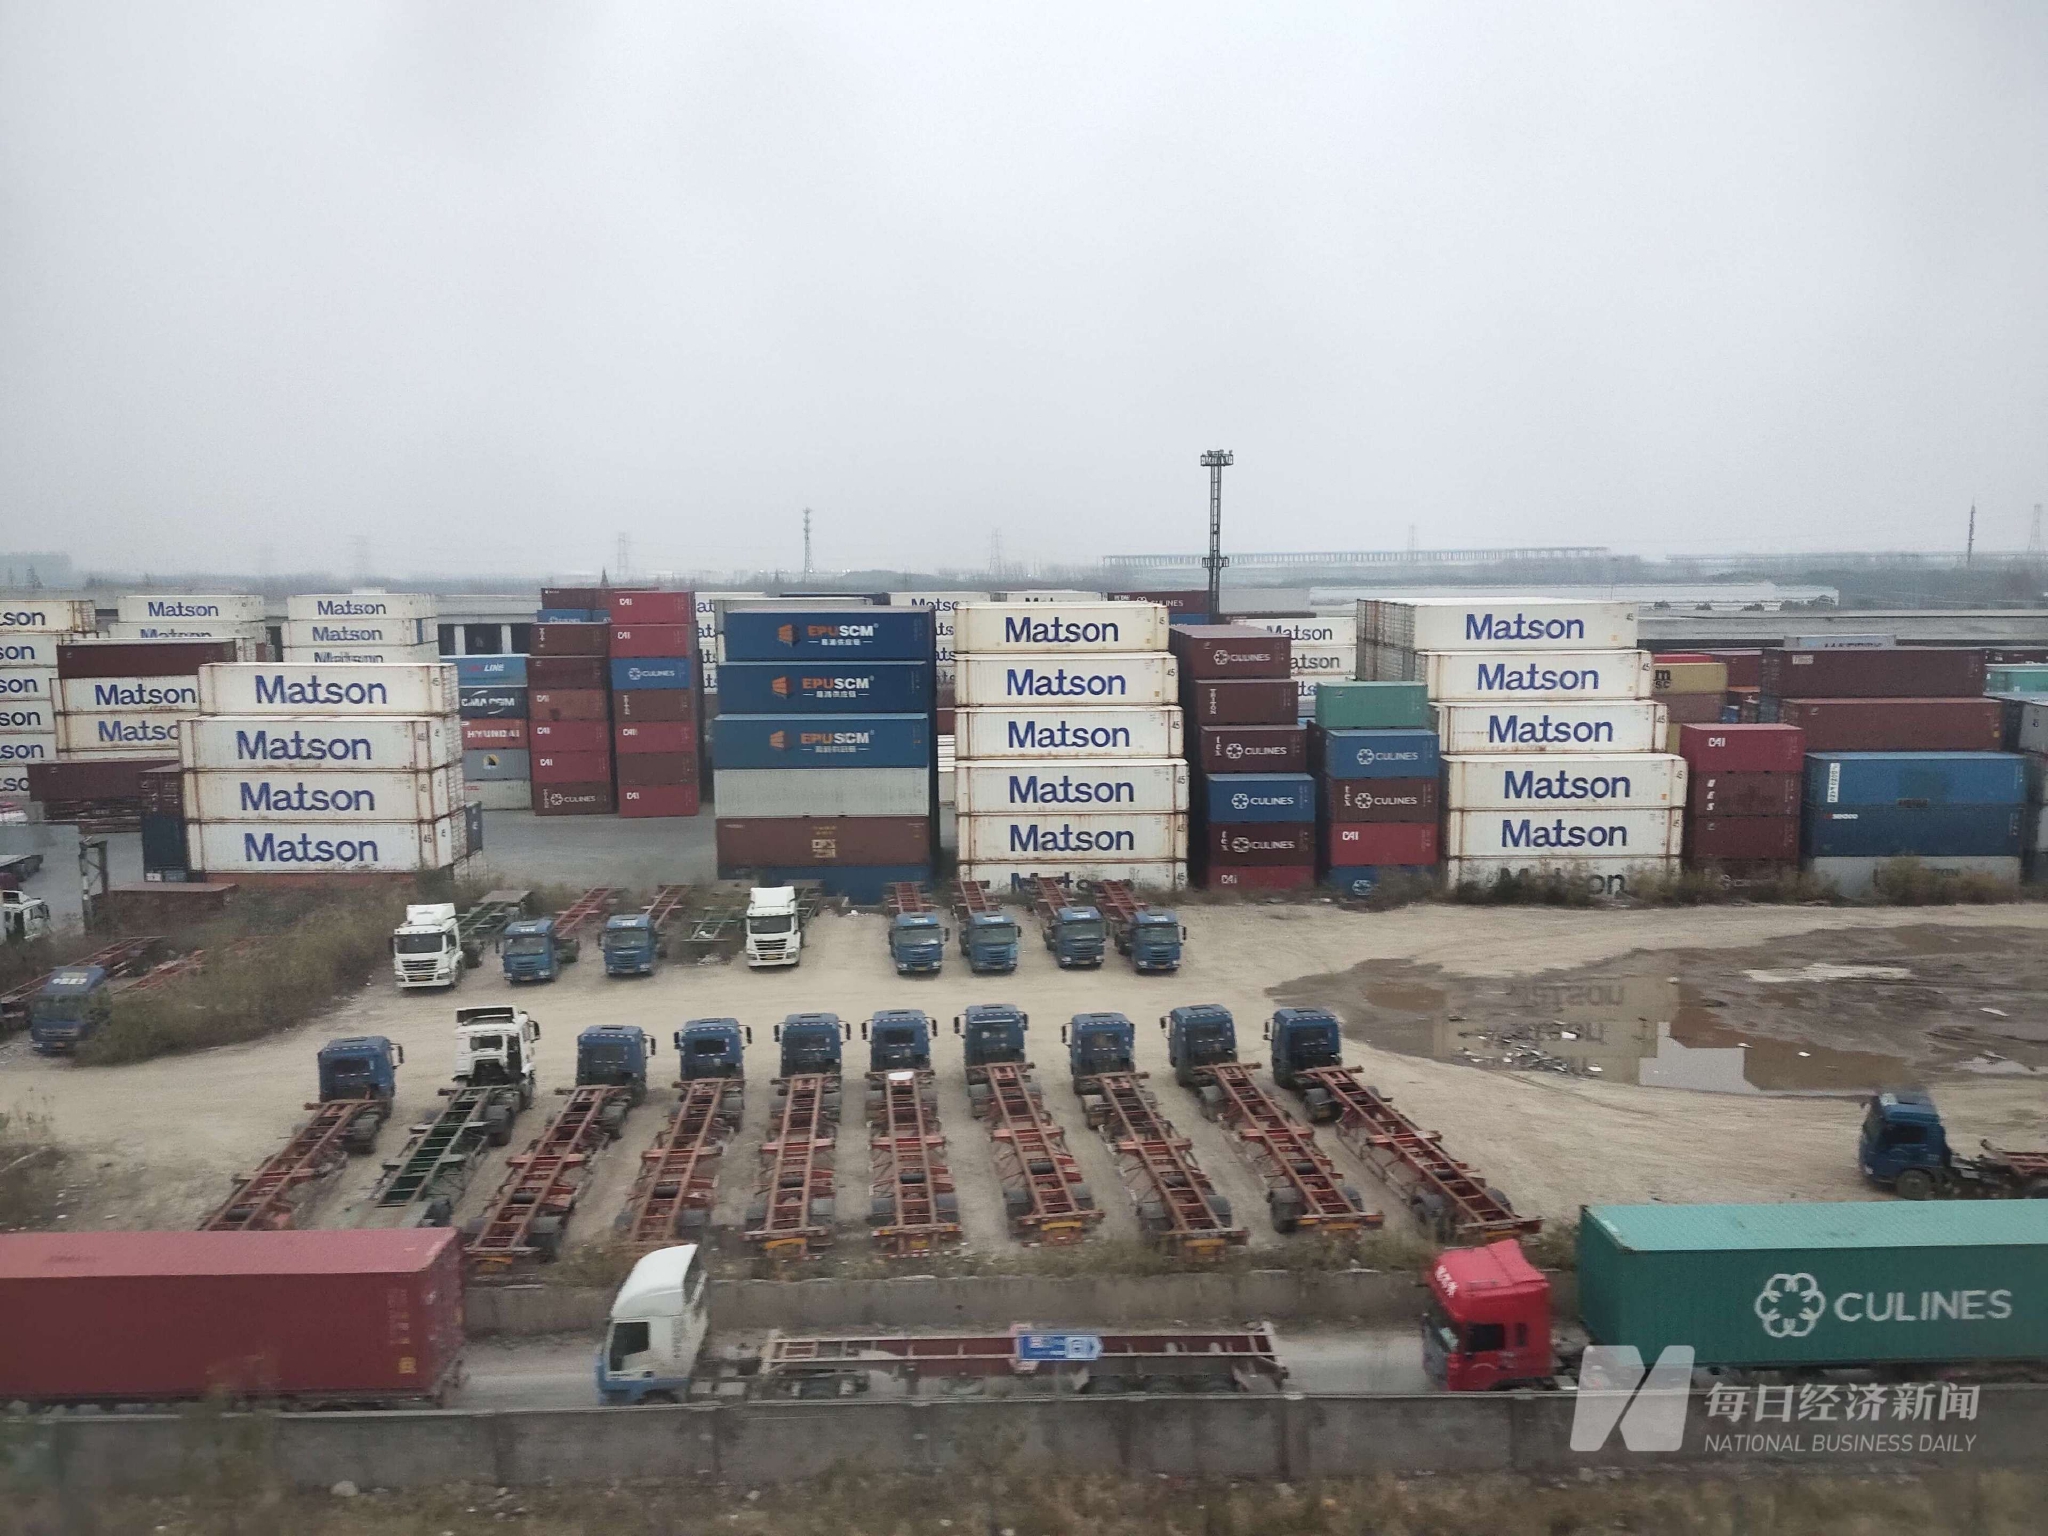 imtoken安卓版下载app|全球集装箱溢出流入中国：有码头空箱堆存量占比超90%，如何消耗过剩箱量？